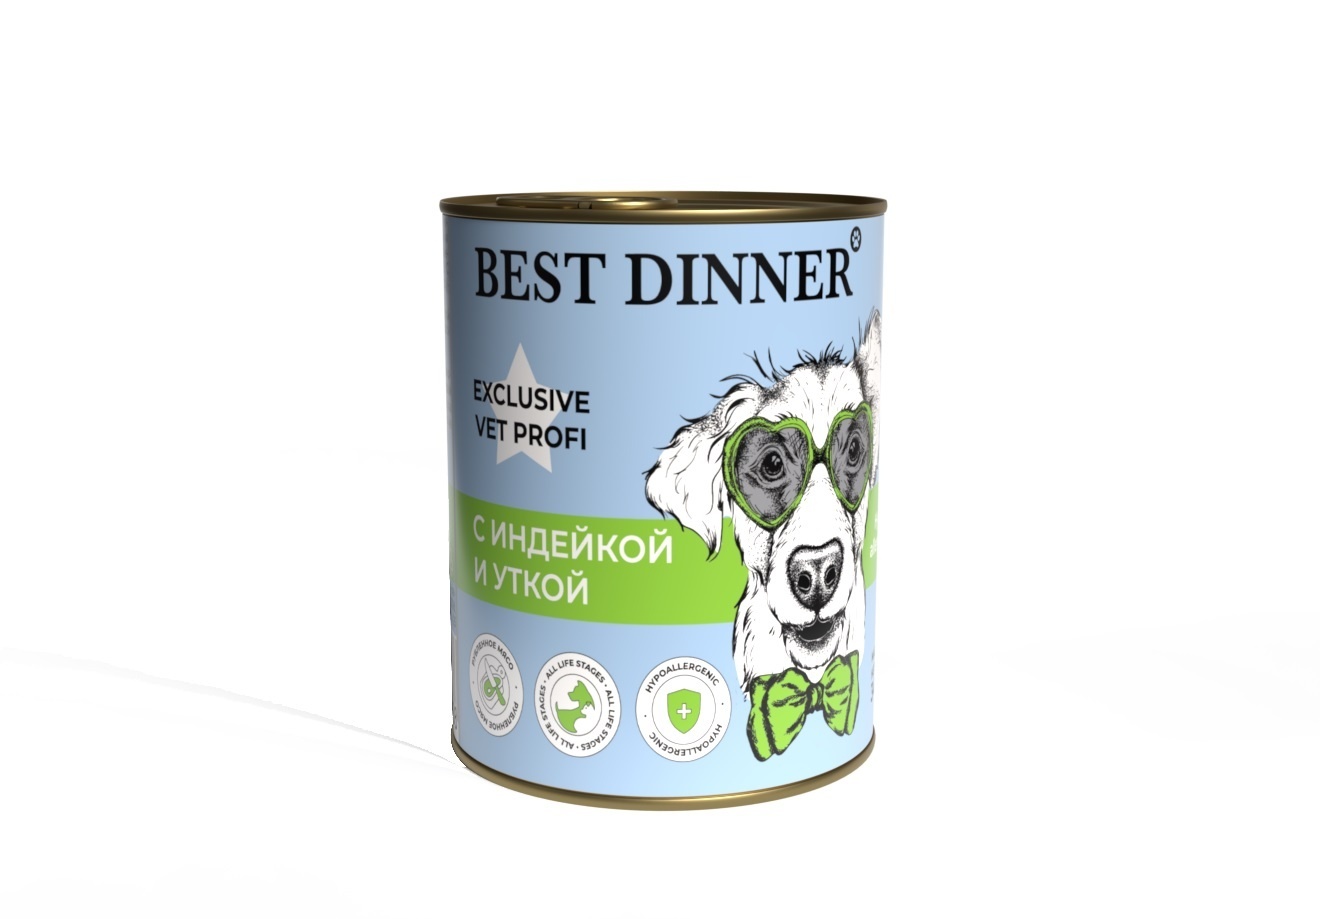 Best Dinner Best Dinner гипоаллергенные консервы С индейкой и уткой для собак всех пород (340 г)